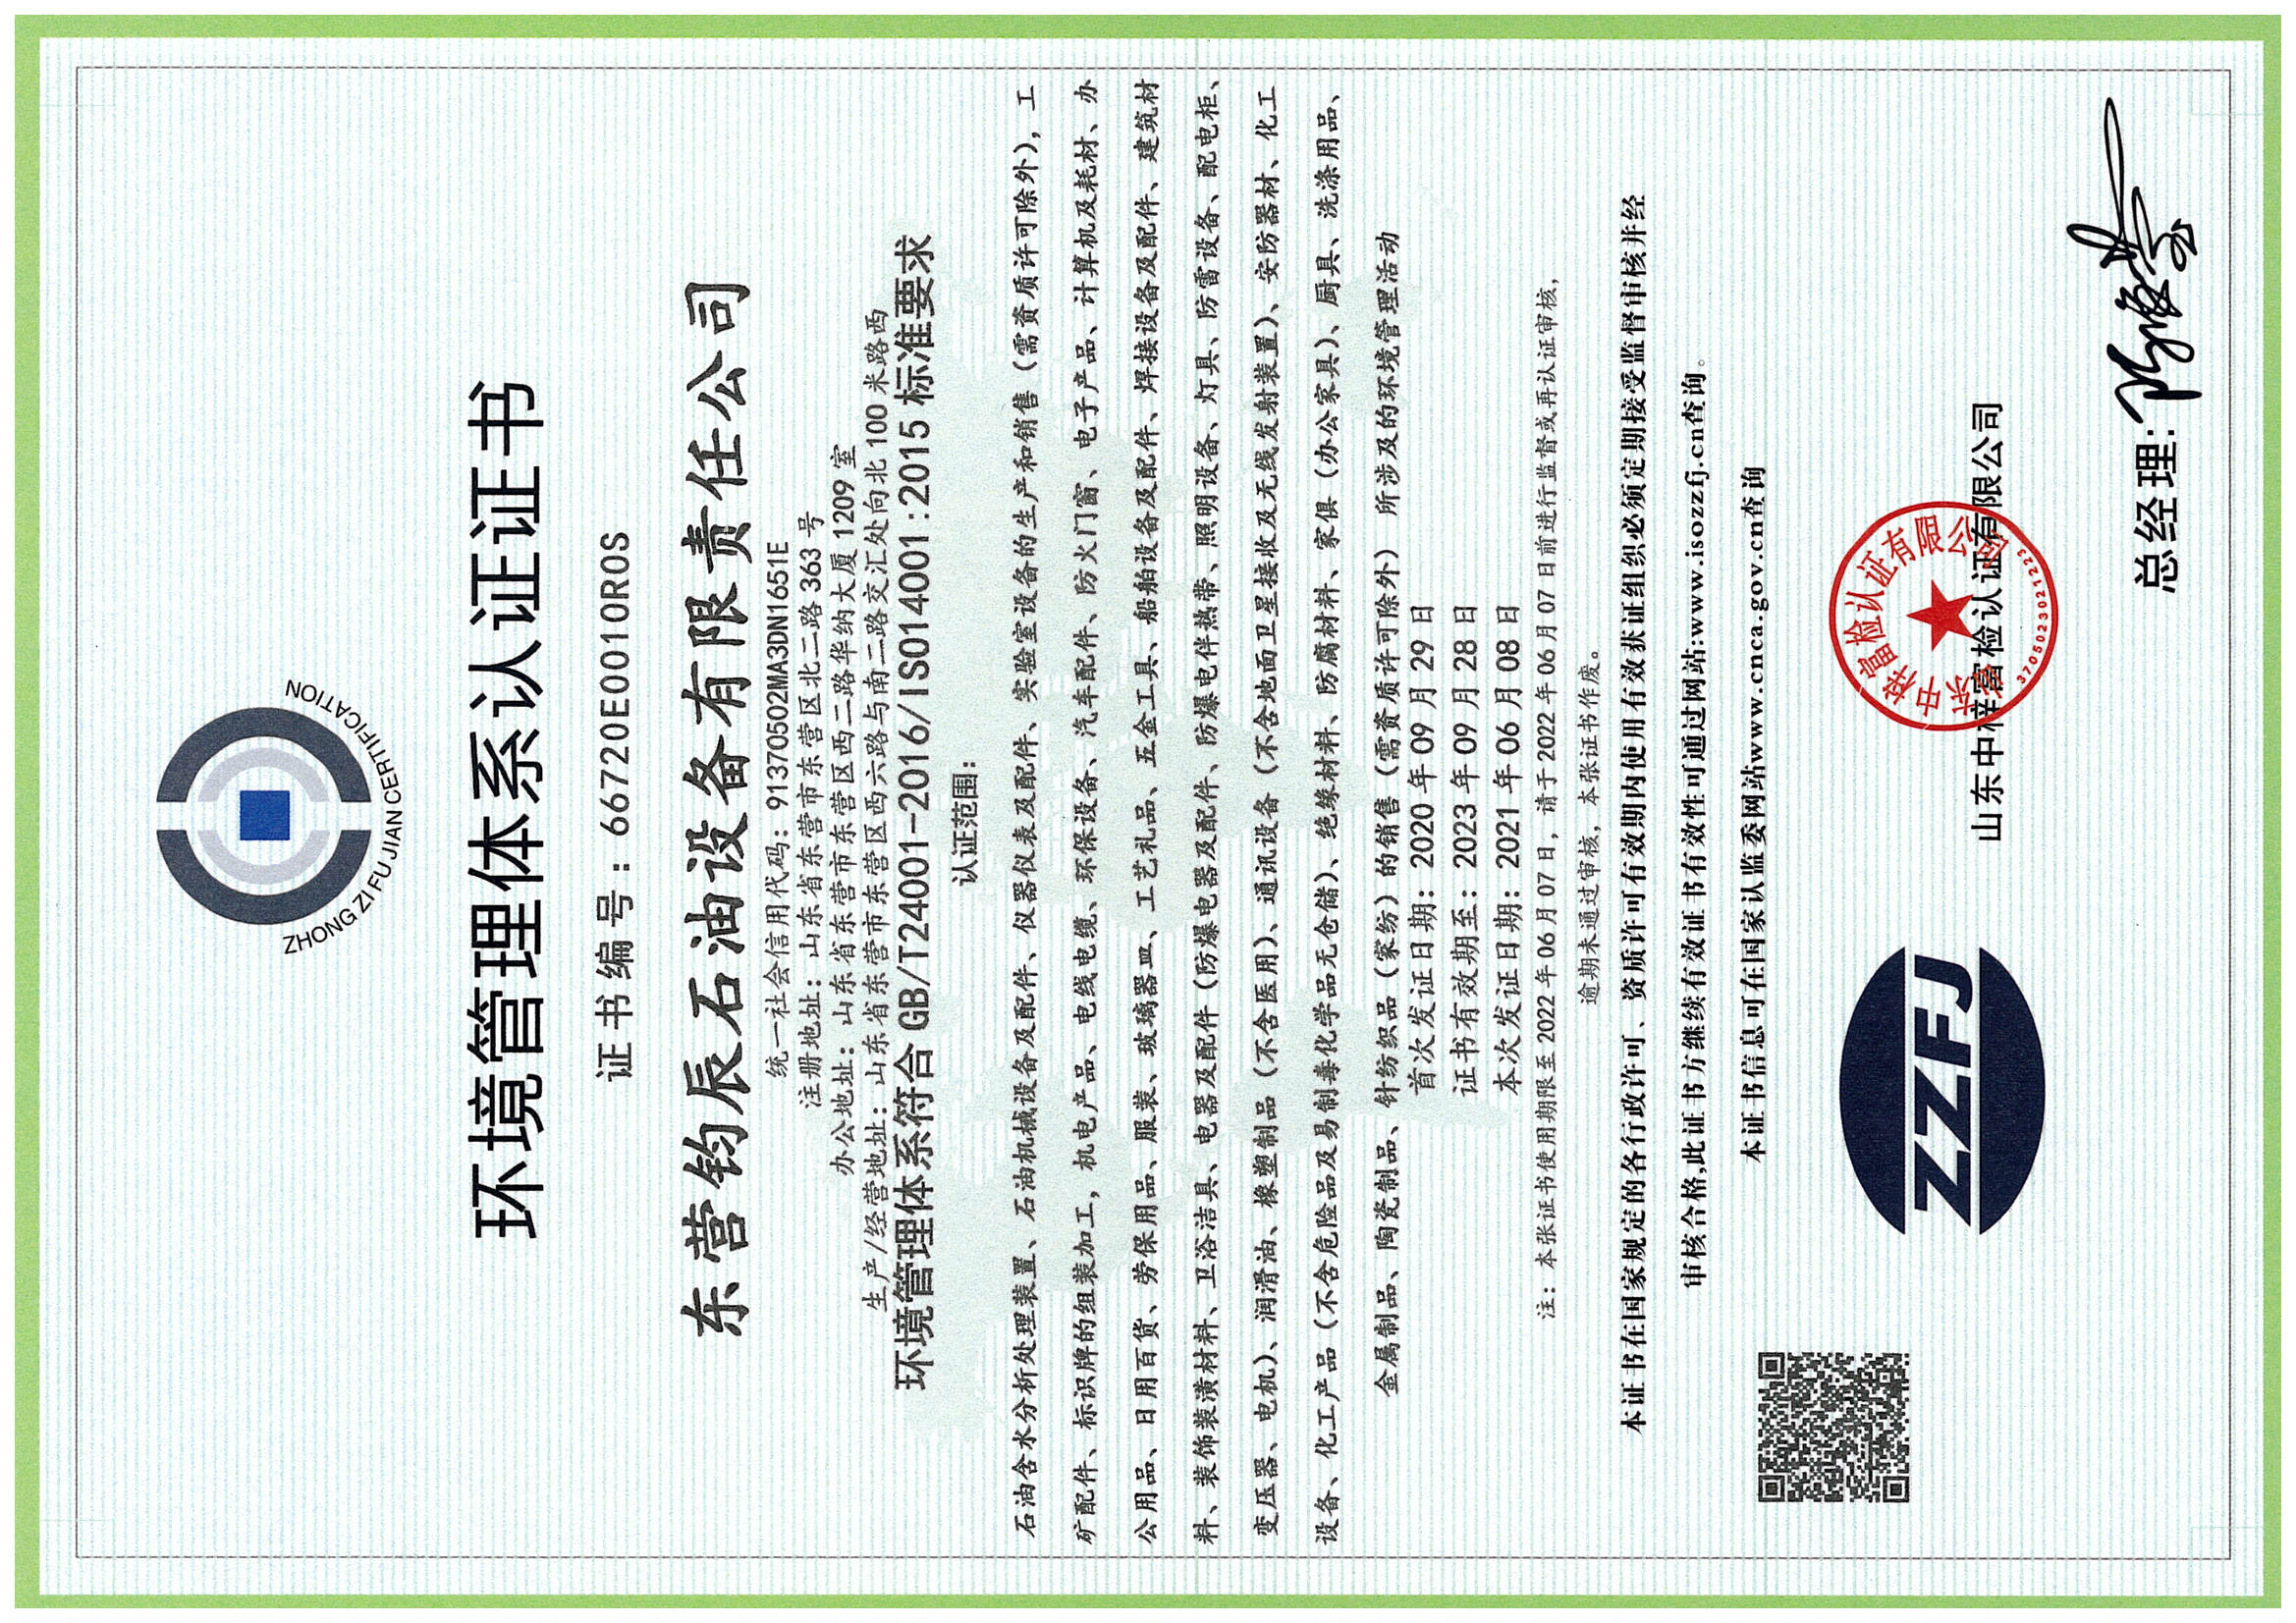 环境管理体系认证证书（中文）.jpg